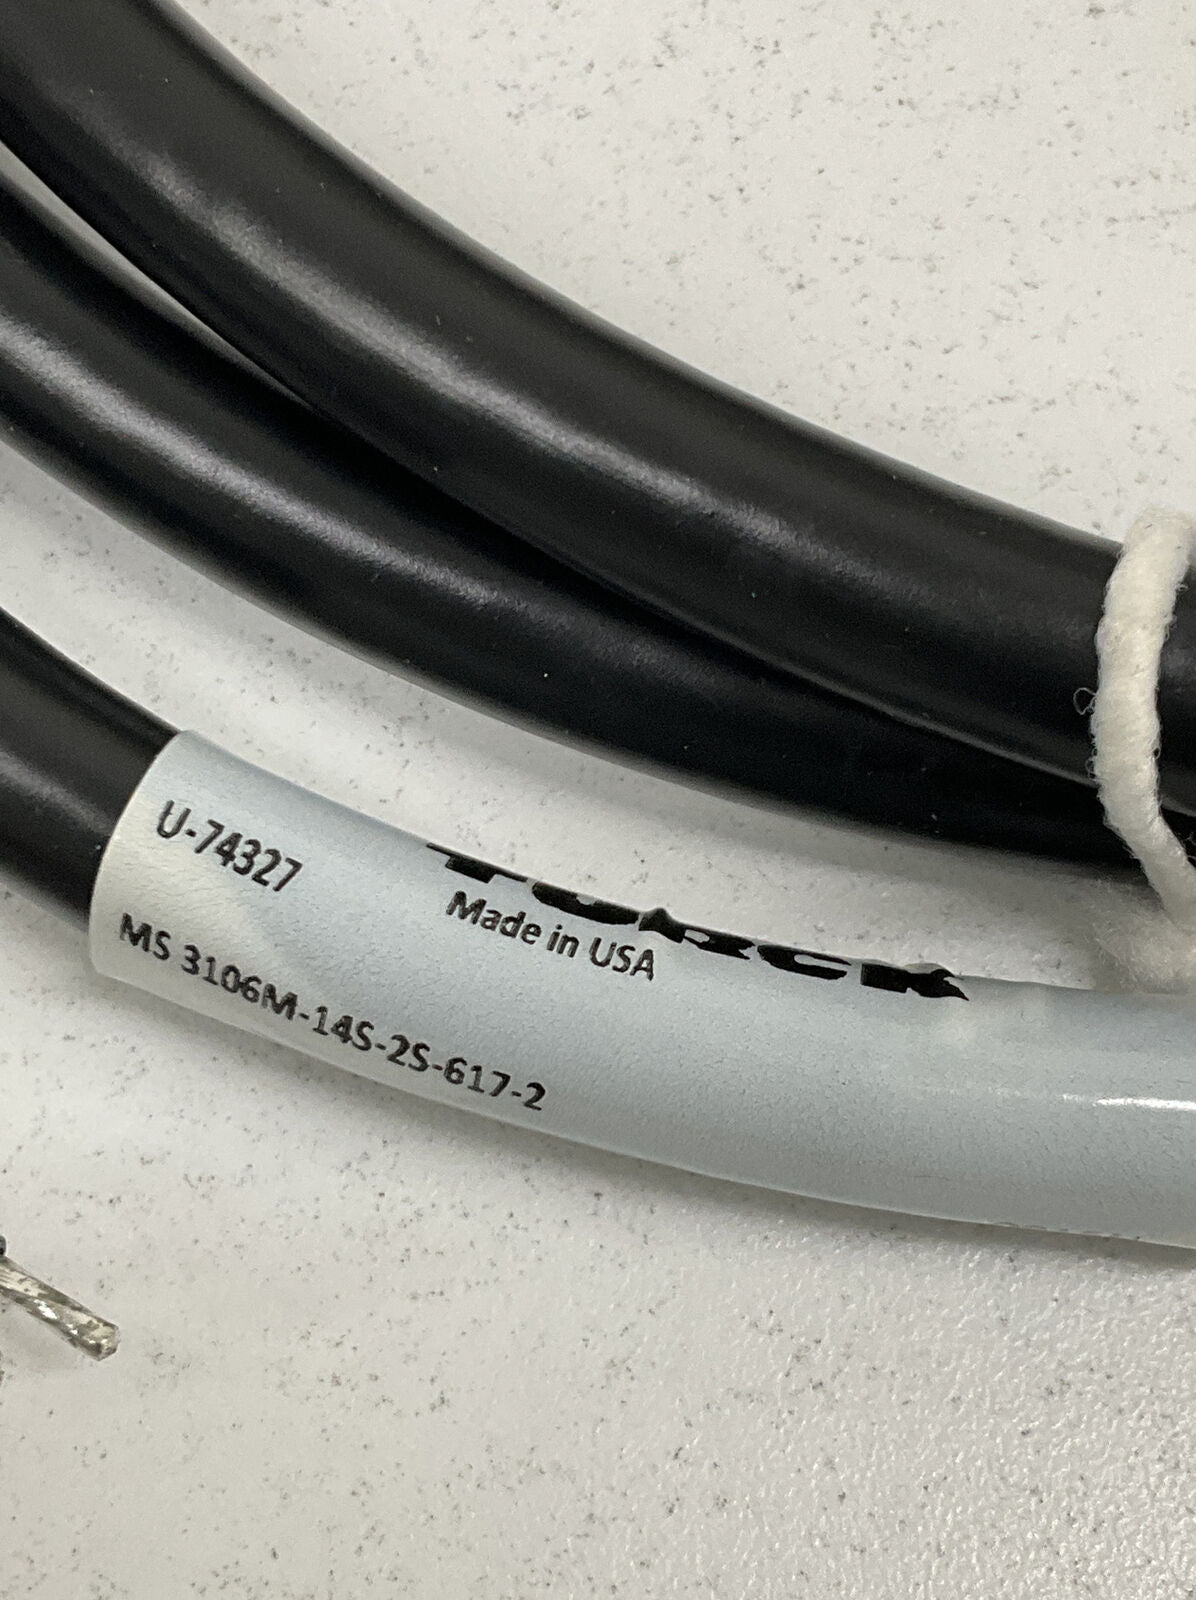 Turck MS 3106M-14S-2S-617-2 / U74327 Cordset Cable (CBL120)